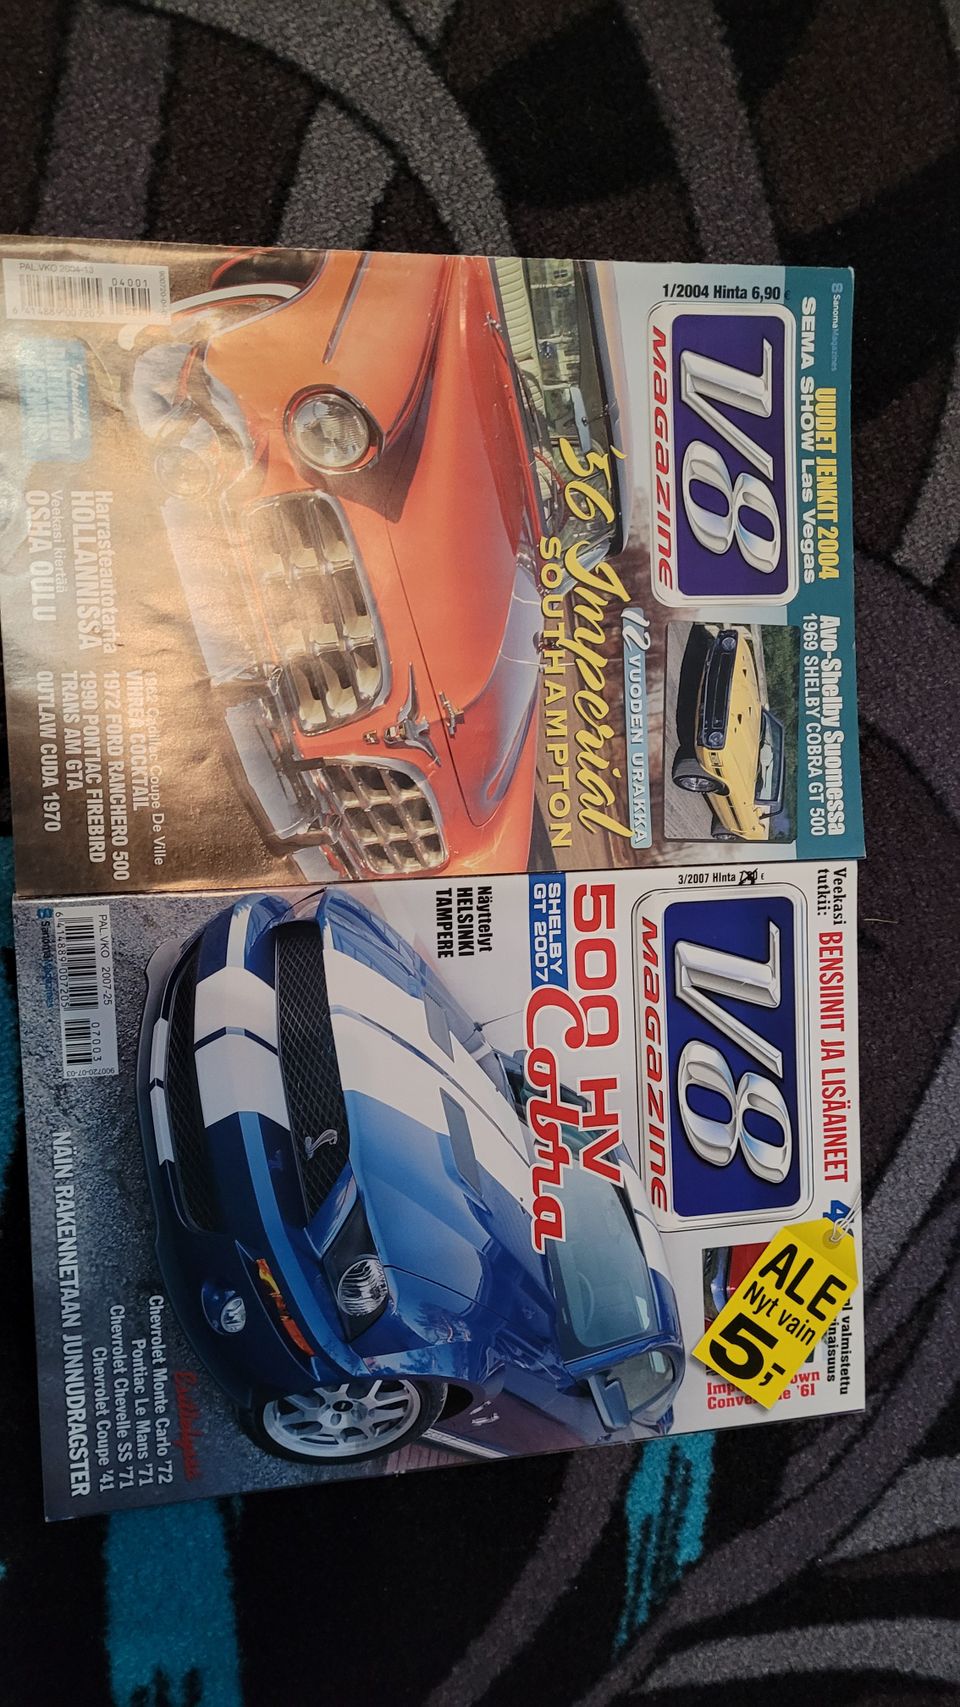 V8 magazine 1/2004 & 3/2007